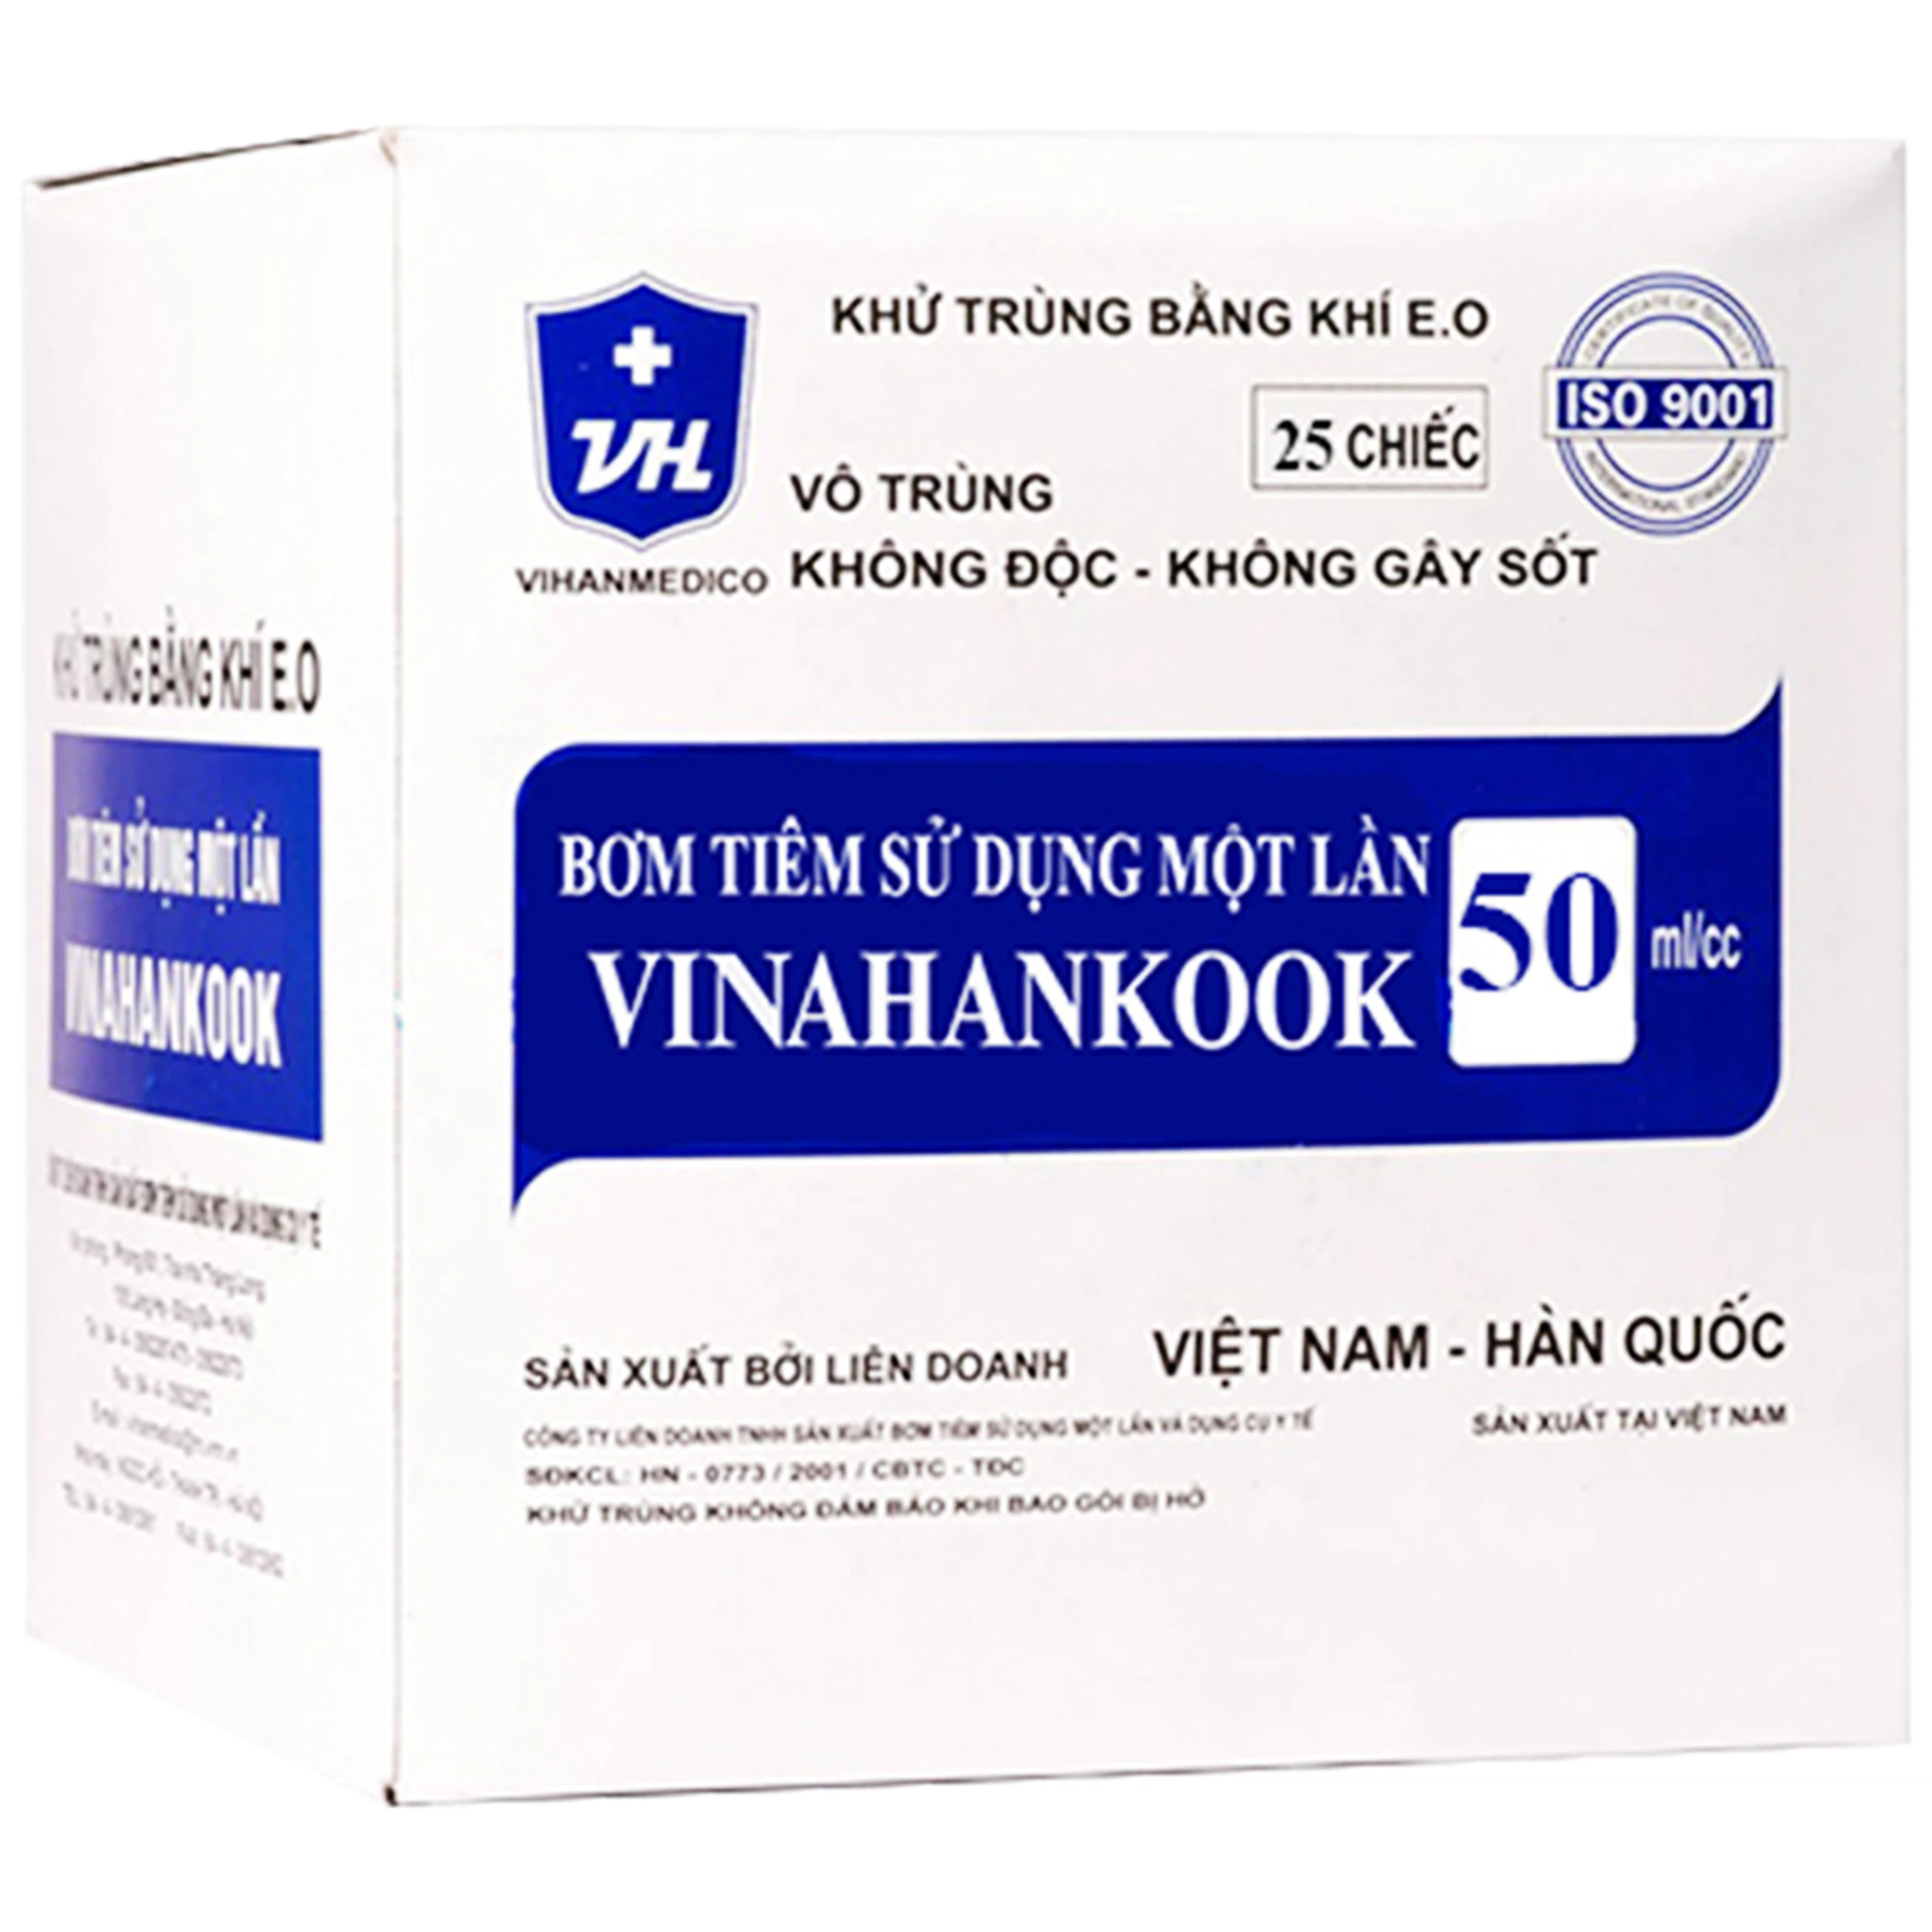 Bơm tiêm sử dụng một lần Vinahankook 50ml/cc phù hợp cho việc bơm thức ăn (25 cái)